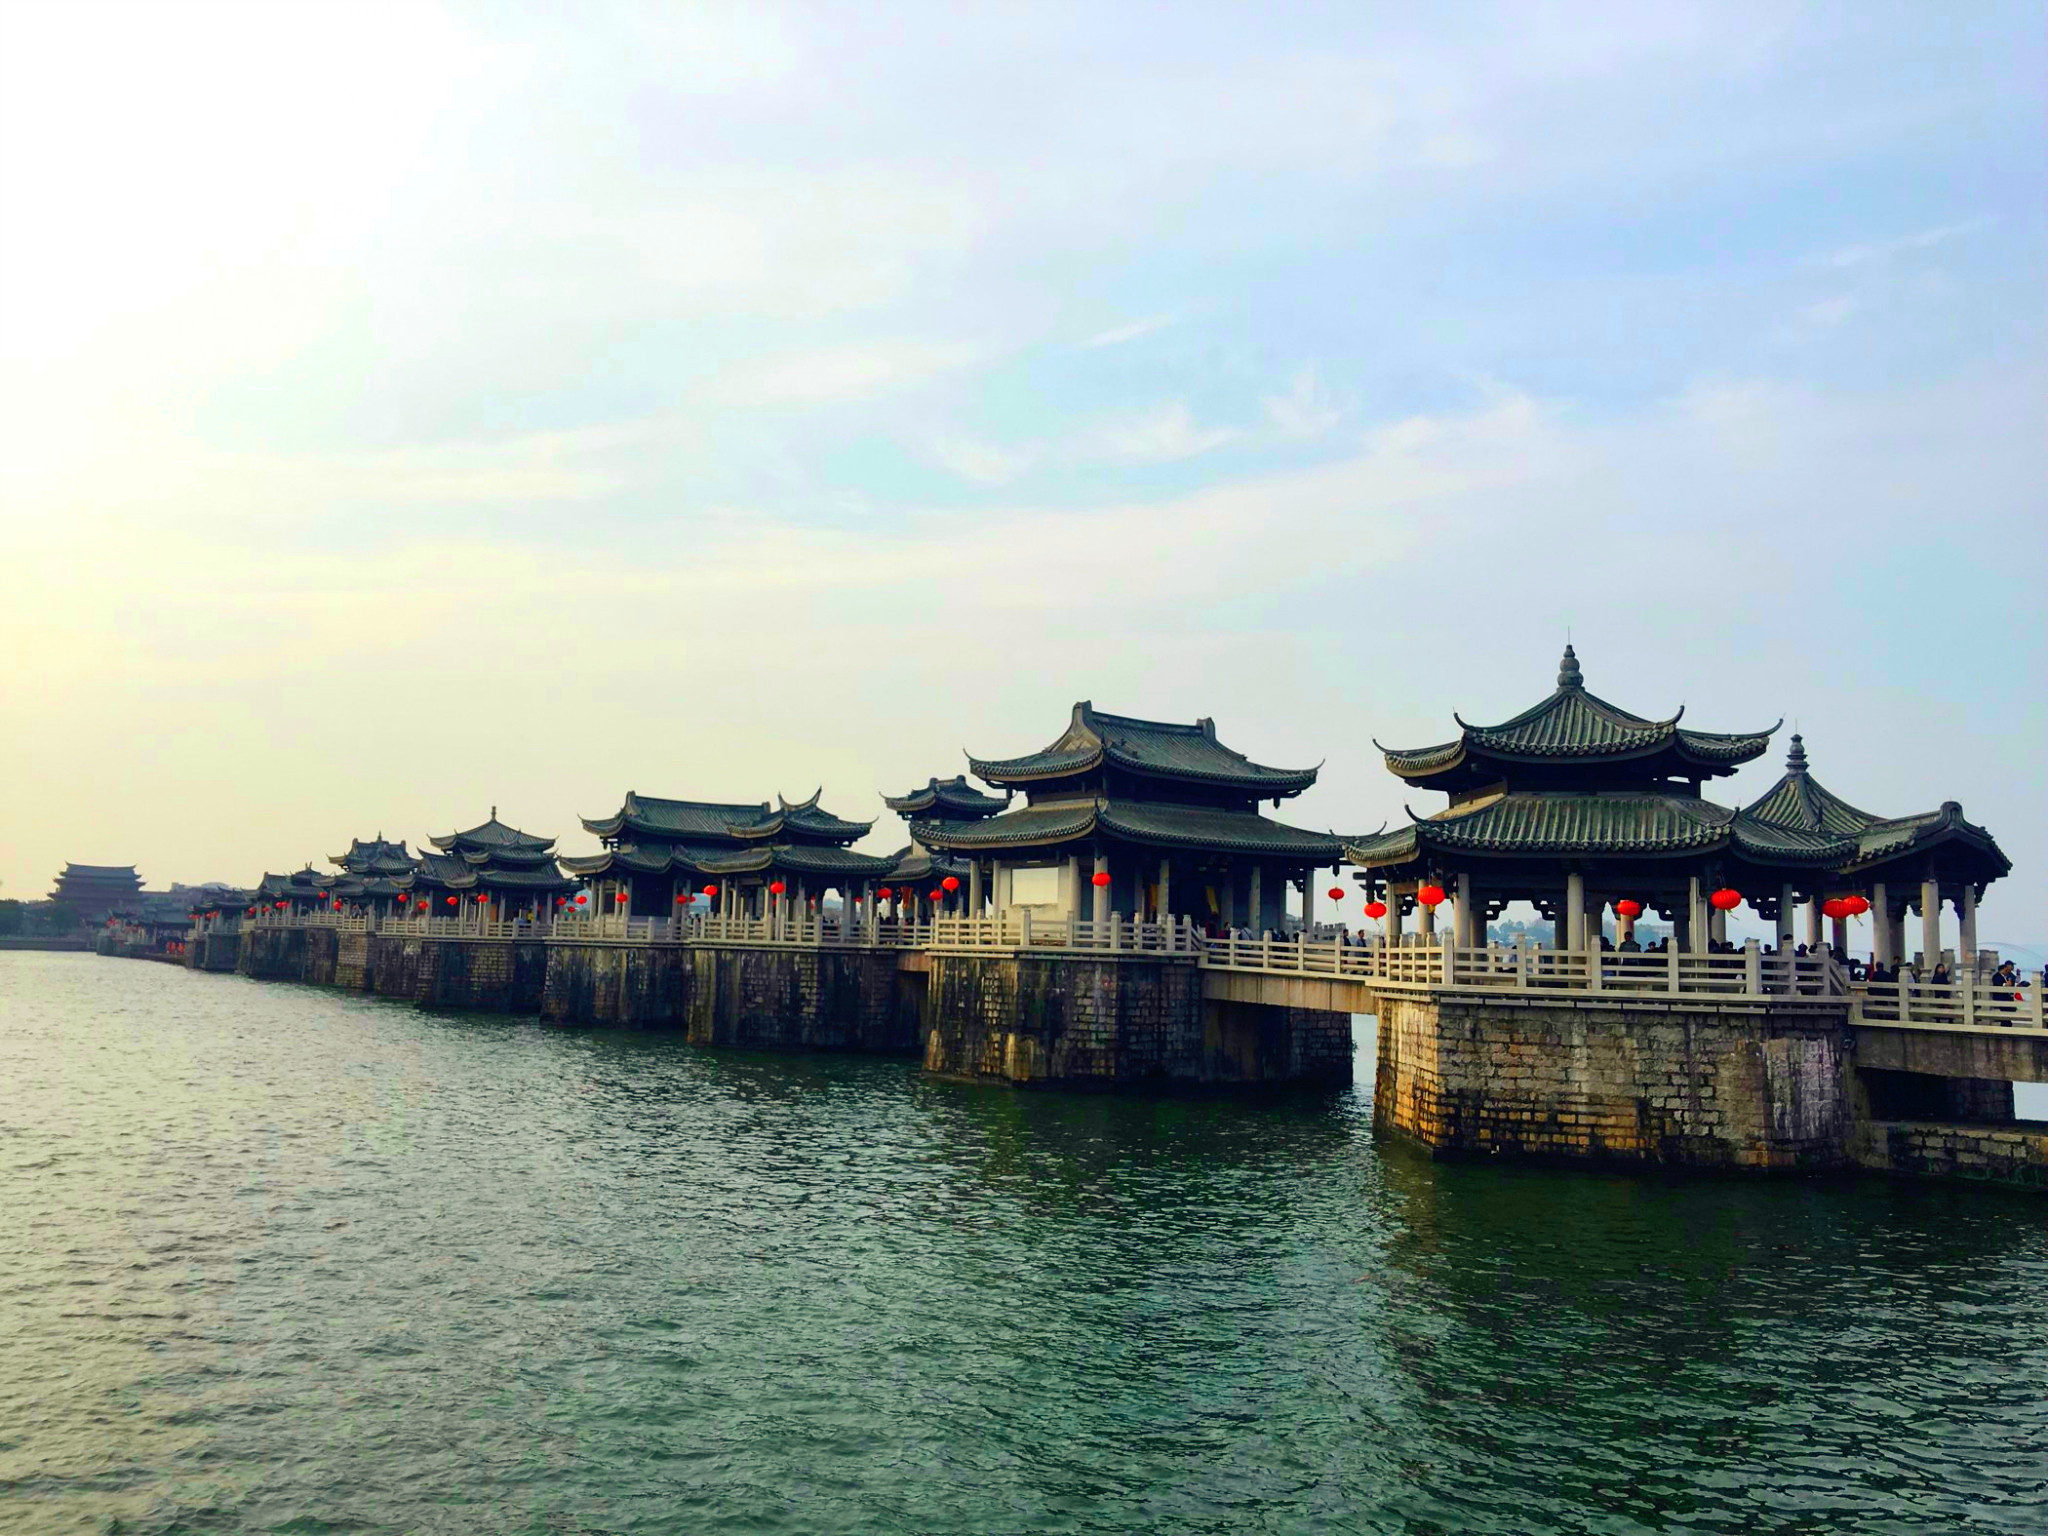 中国四大古桥~广济桥·赵州桥·洛阳桥·卢沟桥···